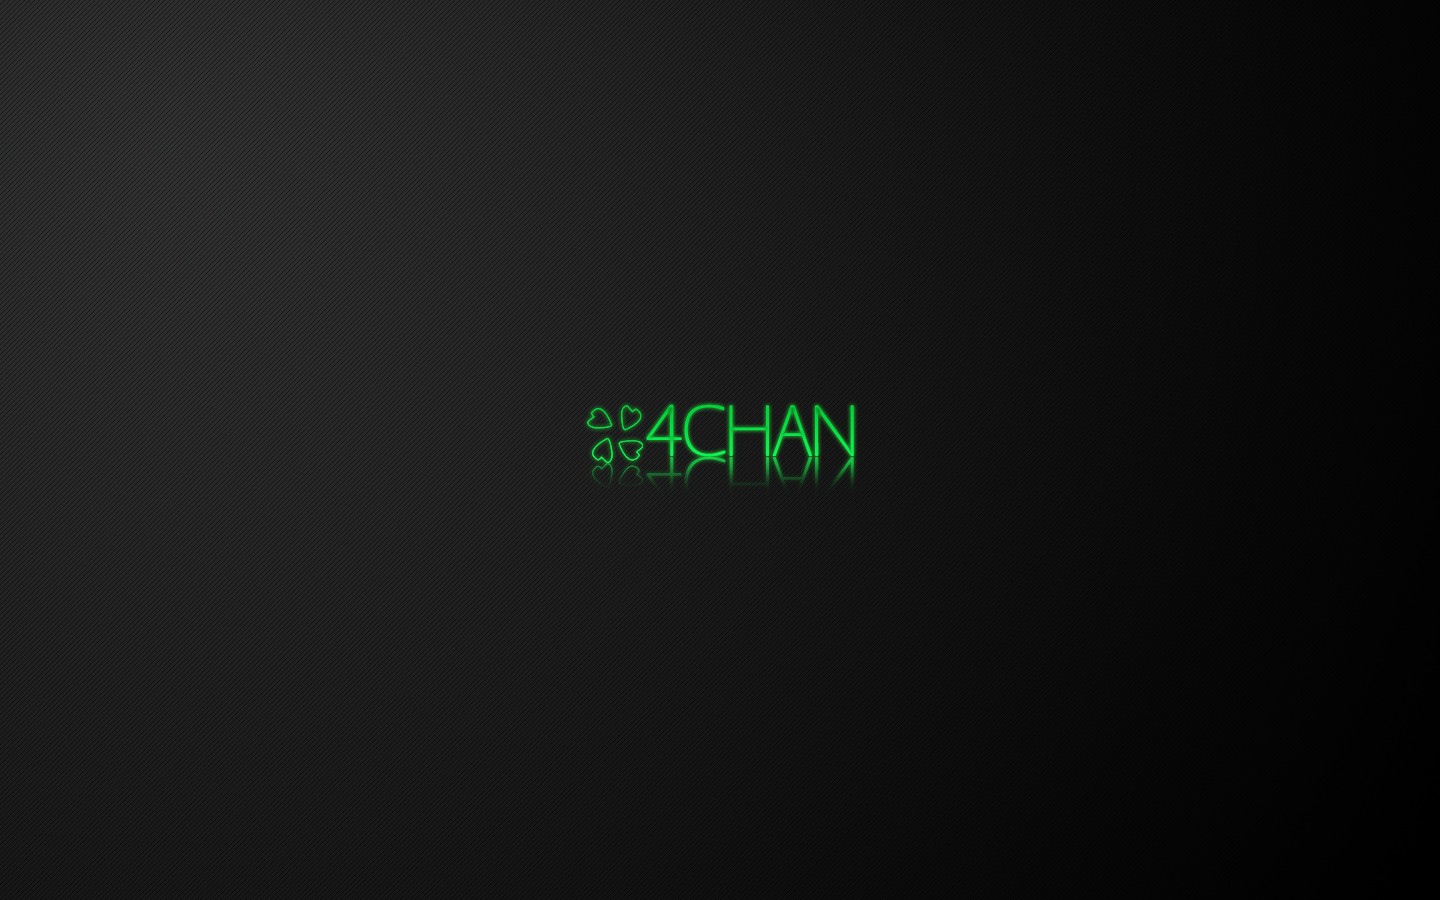 4chan Minimalism Green Black 1440x900